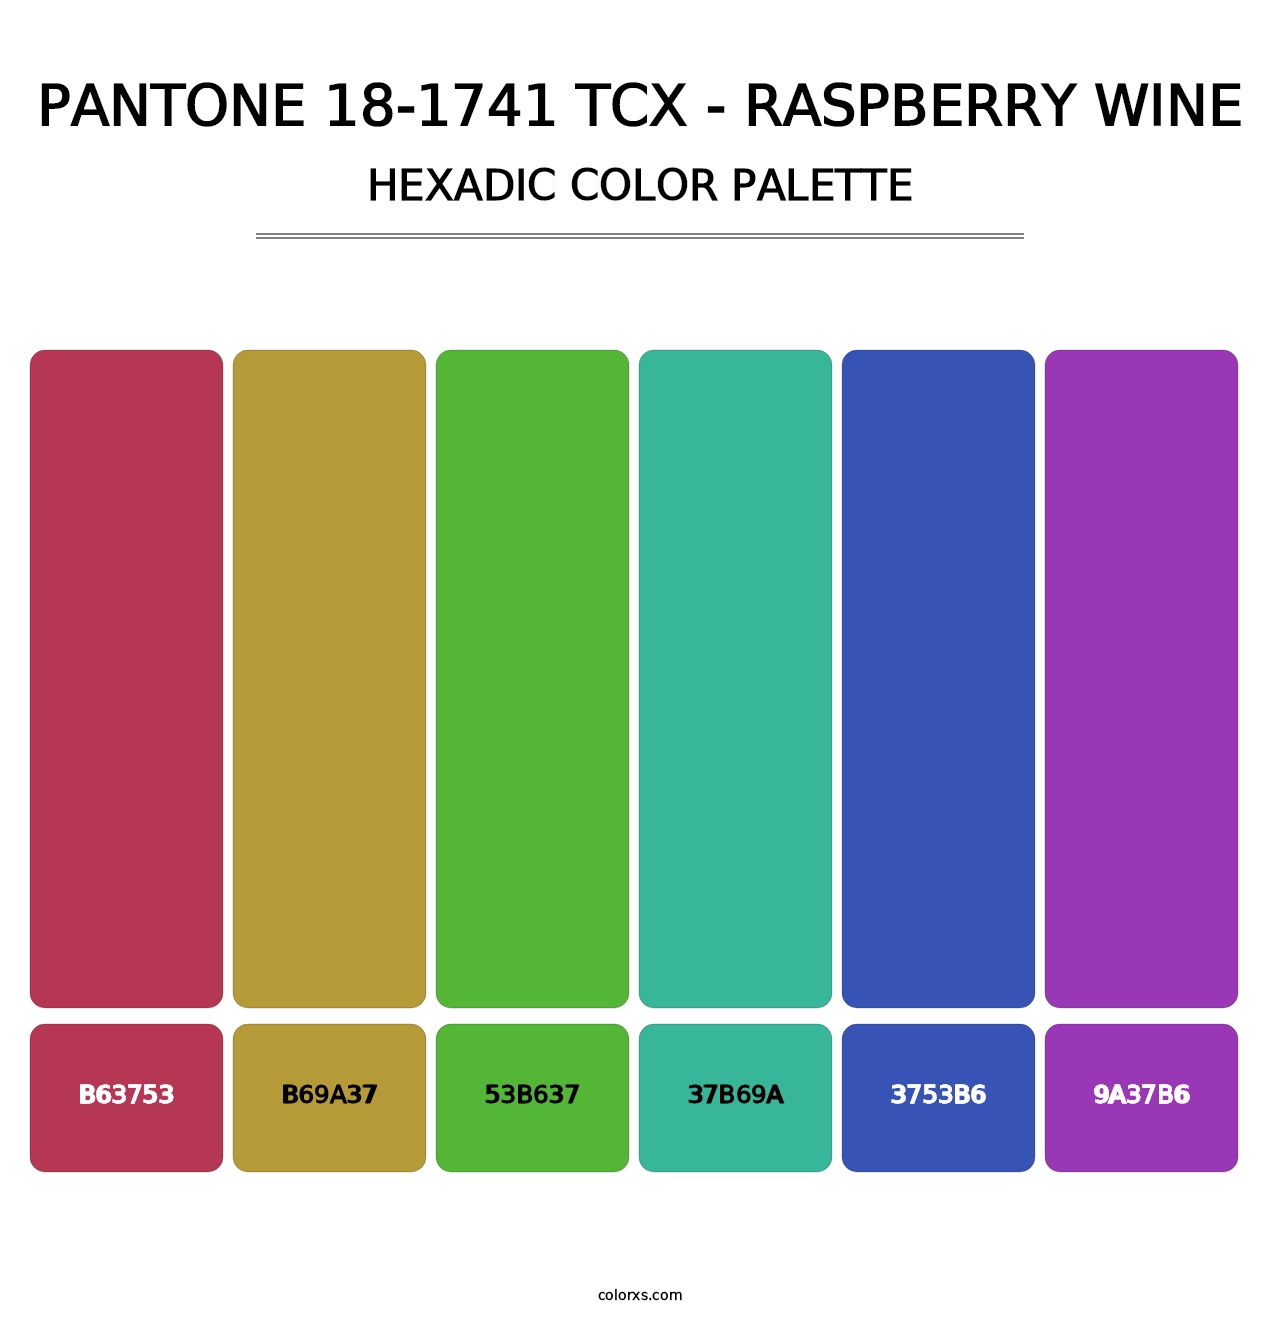 PANTONE 18-1741 TCX - Raspberry Wine - Hexadic Color Palette